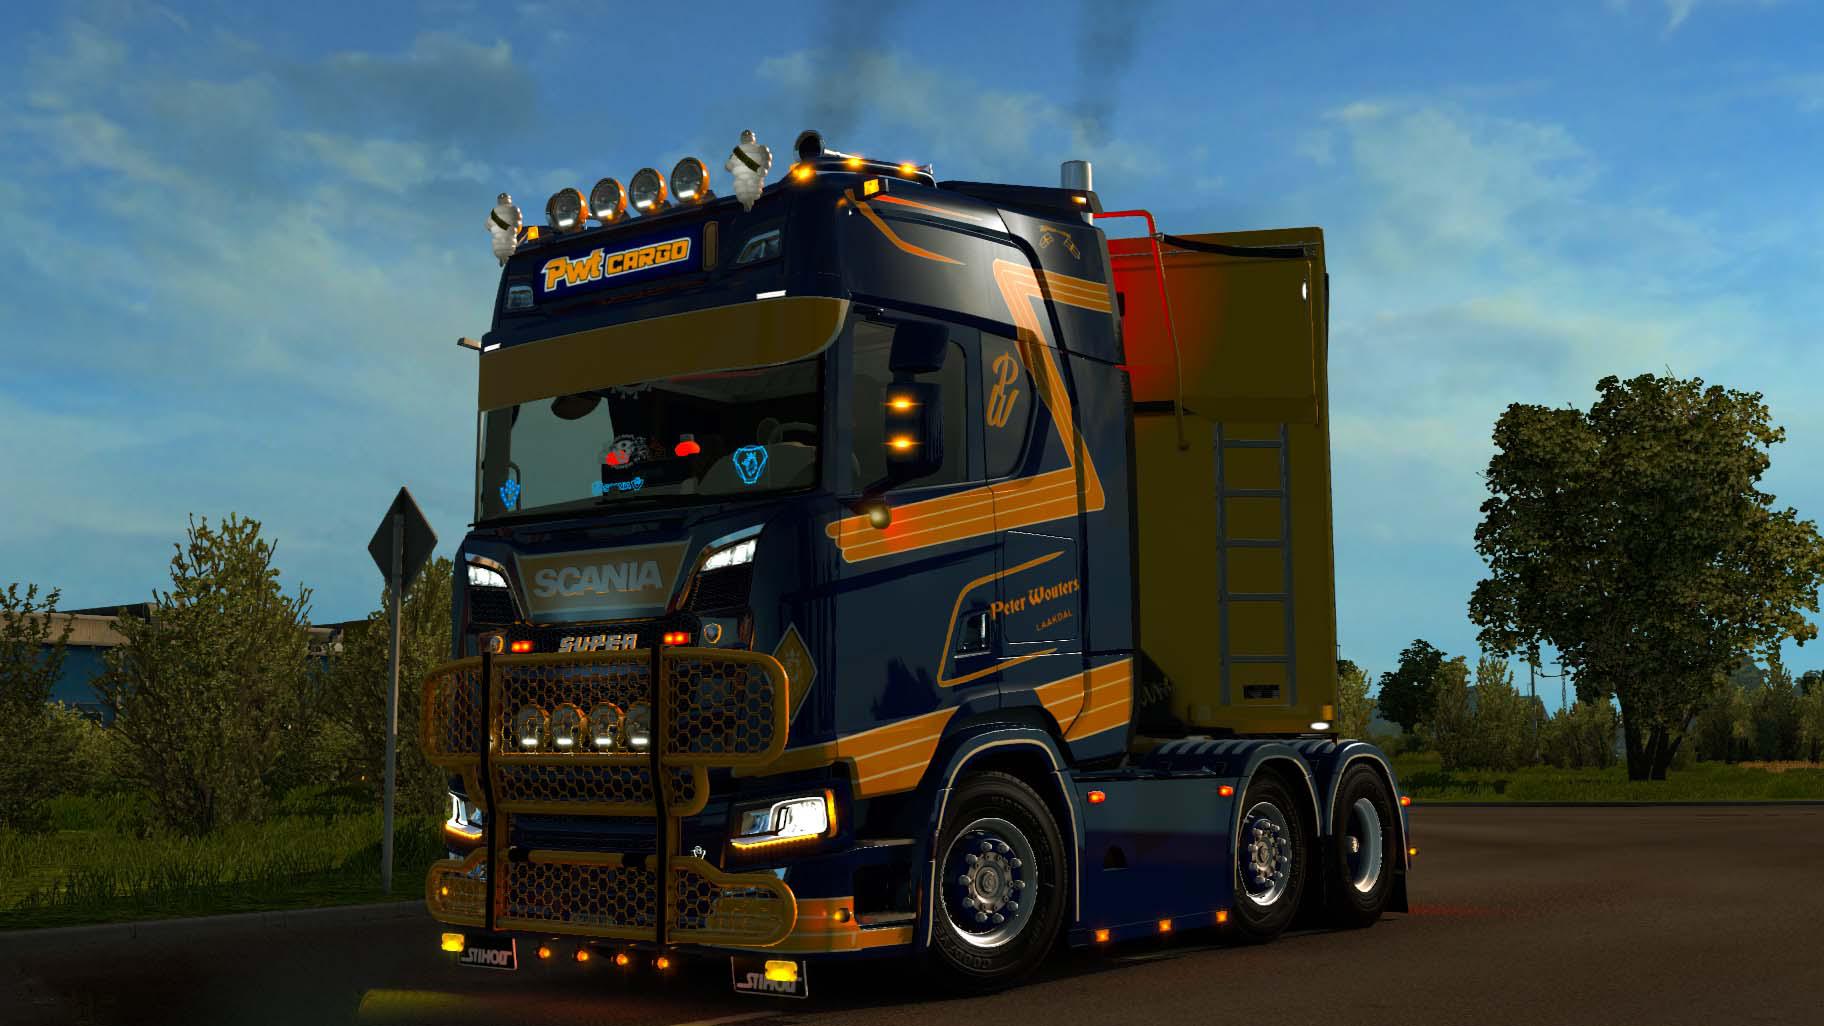 Skin Pwt Cargo For Scania S Lightbox V1 0 Truck Skin Euro Truck Simulator 2 Mods